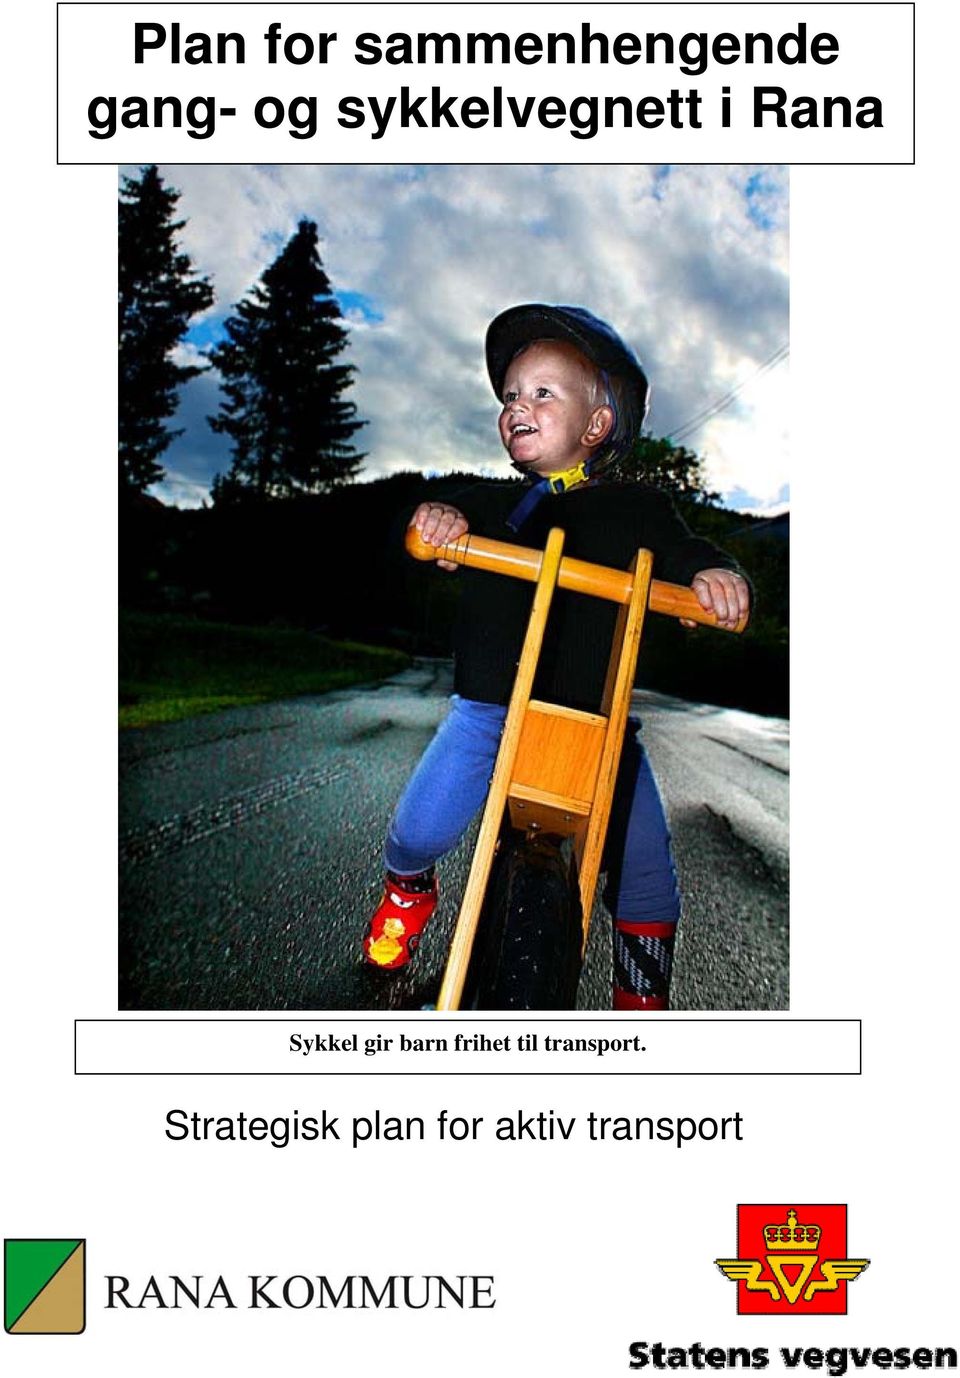 gir barn frihet til transport.